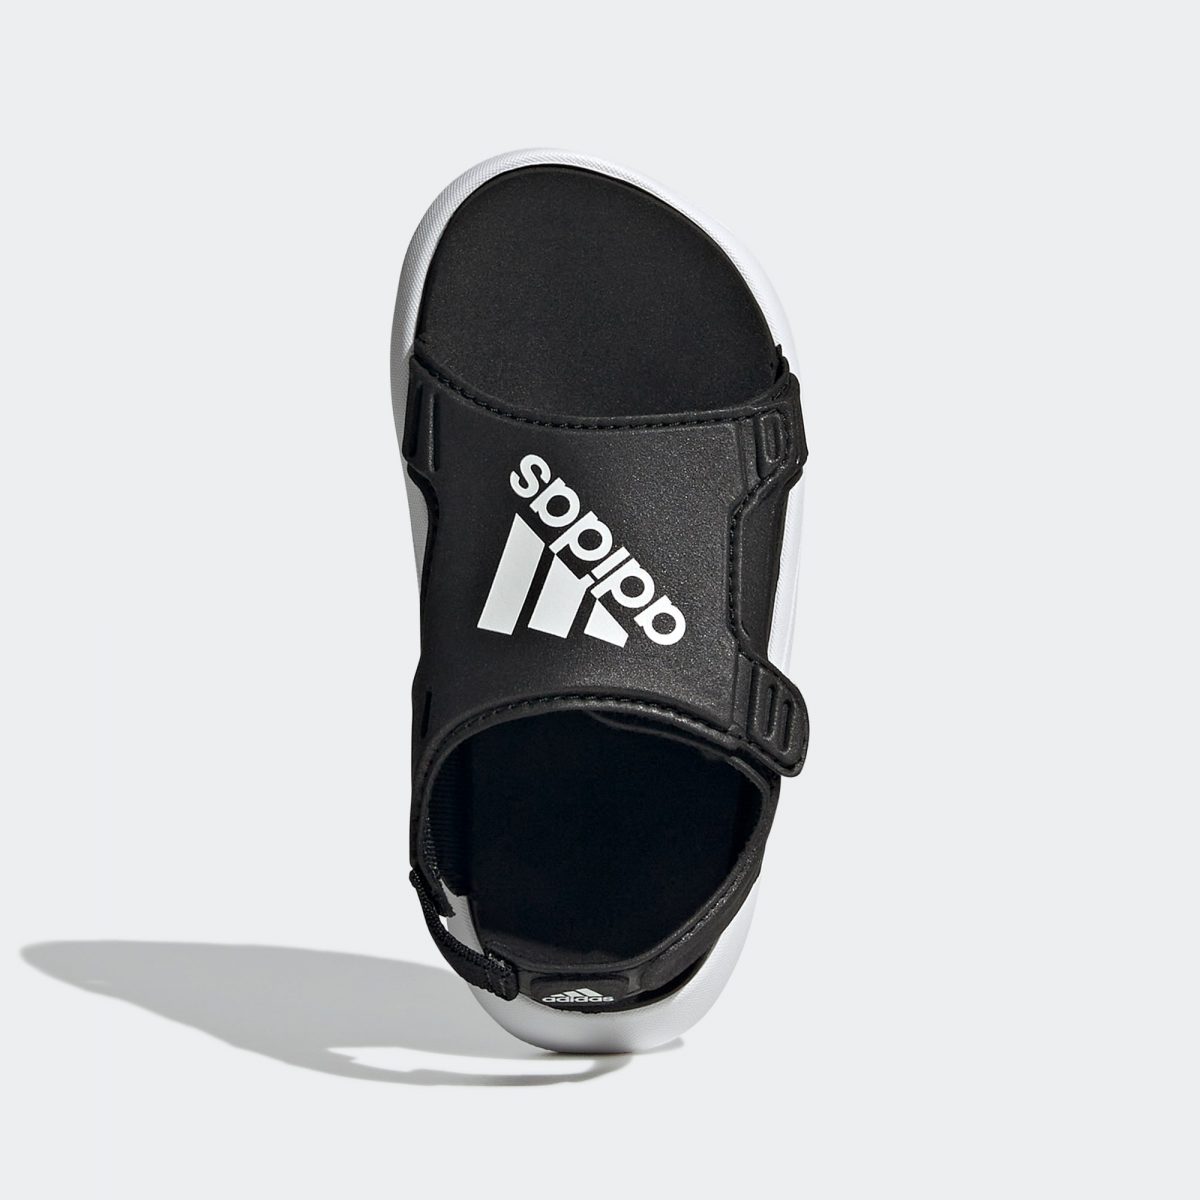 Детские сандалии adidas COMFORT SPORT SWIM SANDALS